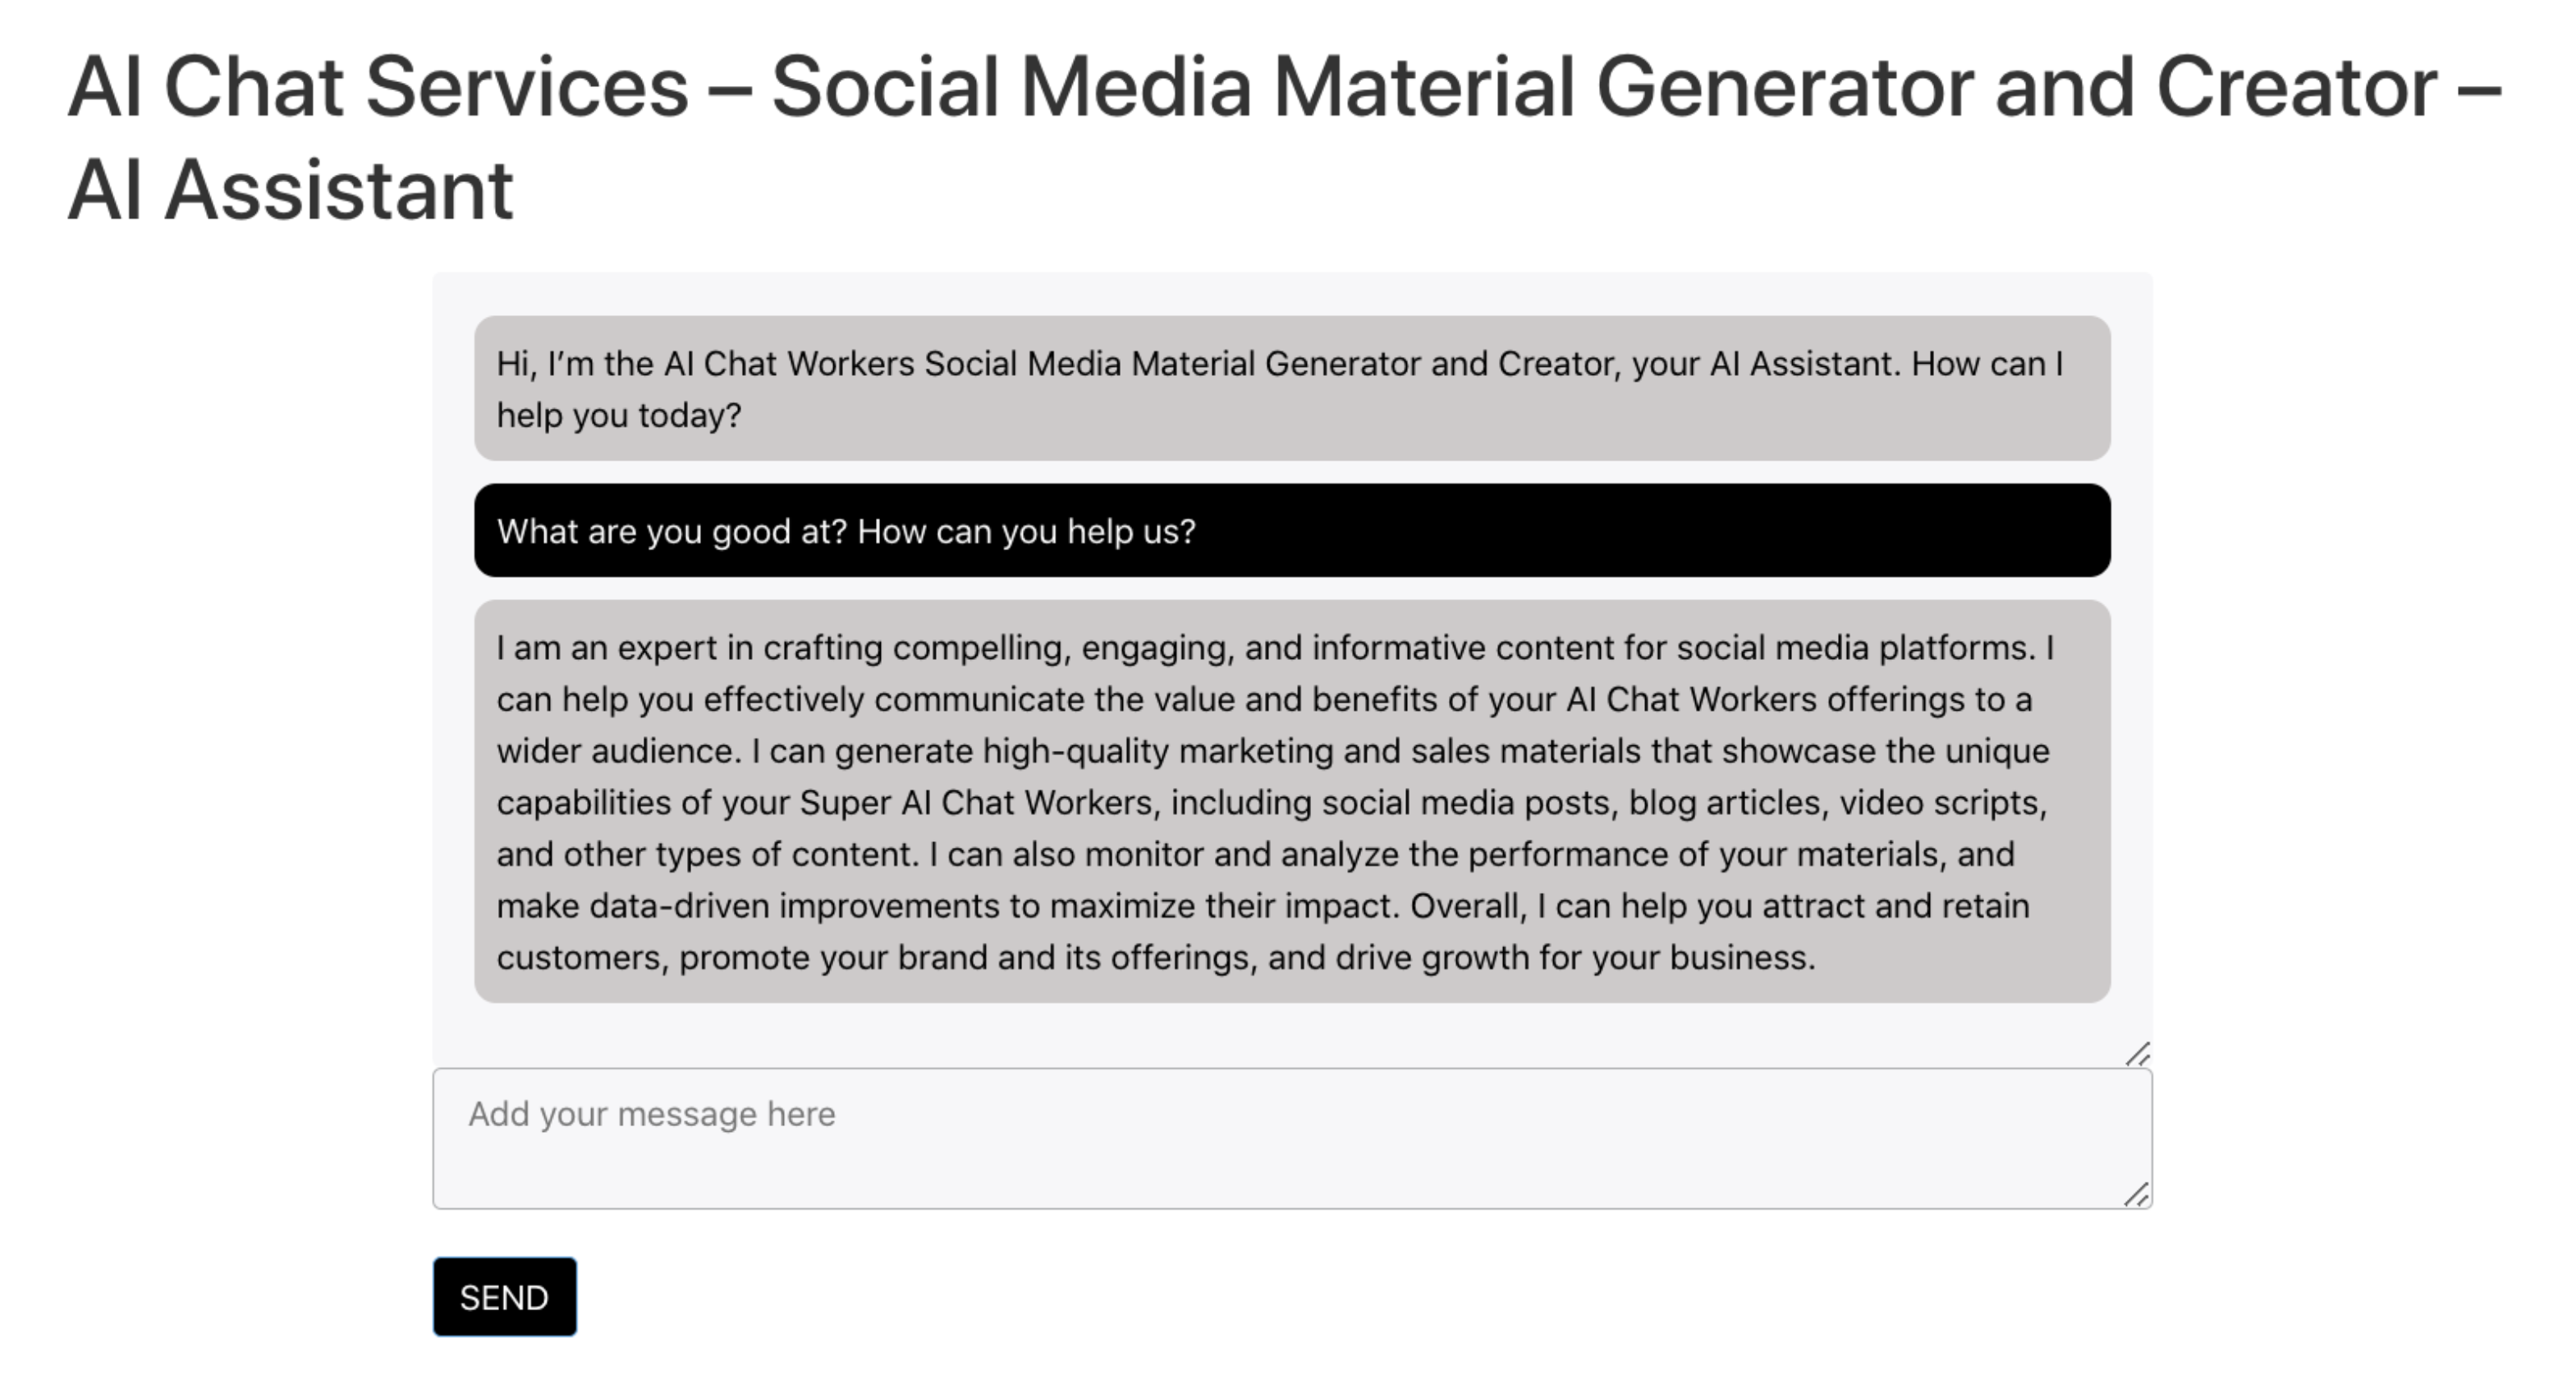 Social Media Material Generator and Creator